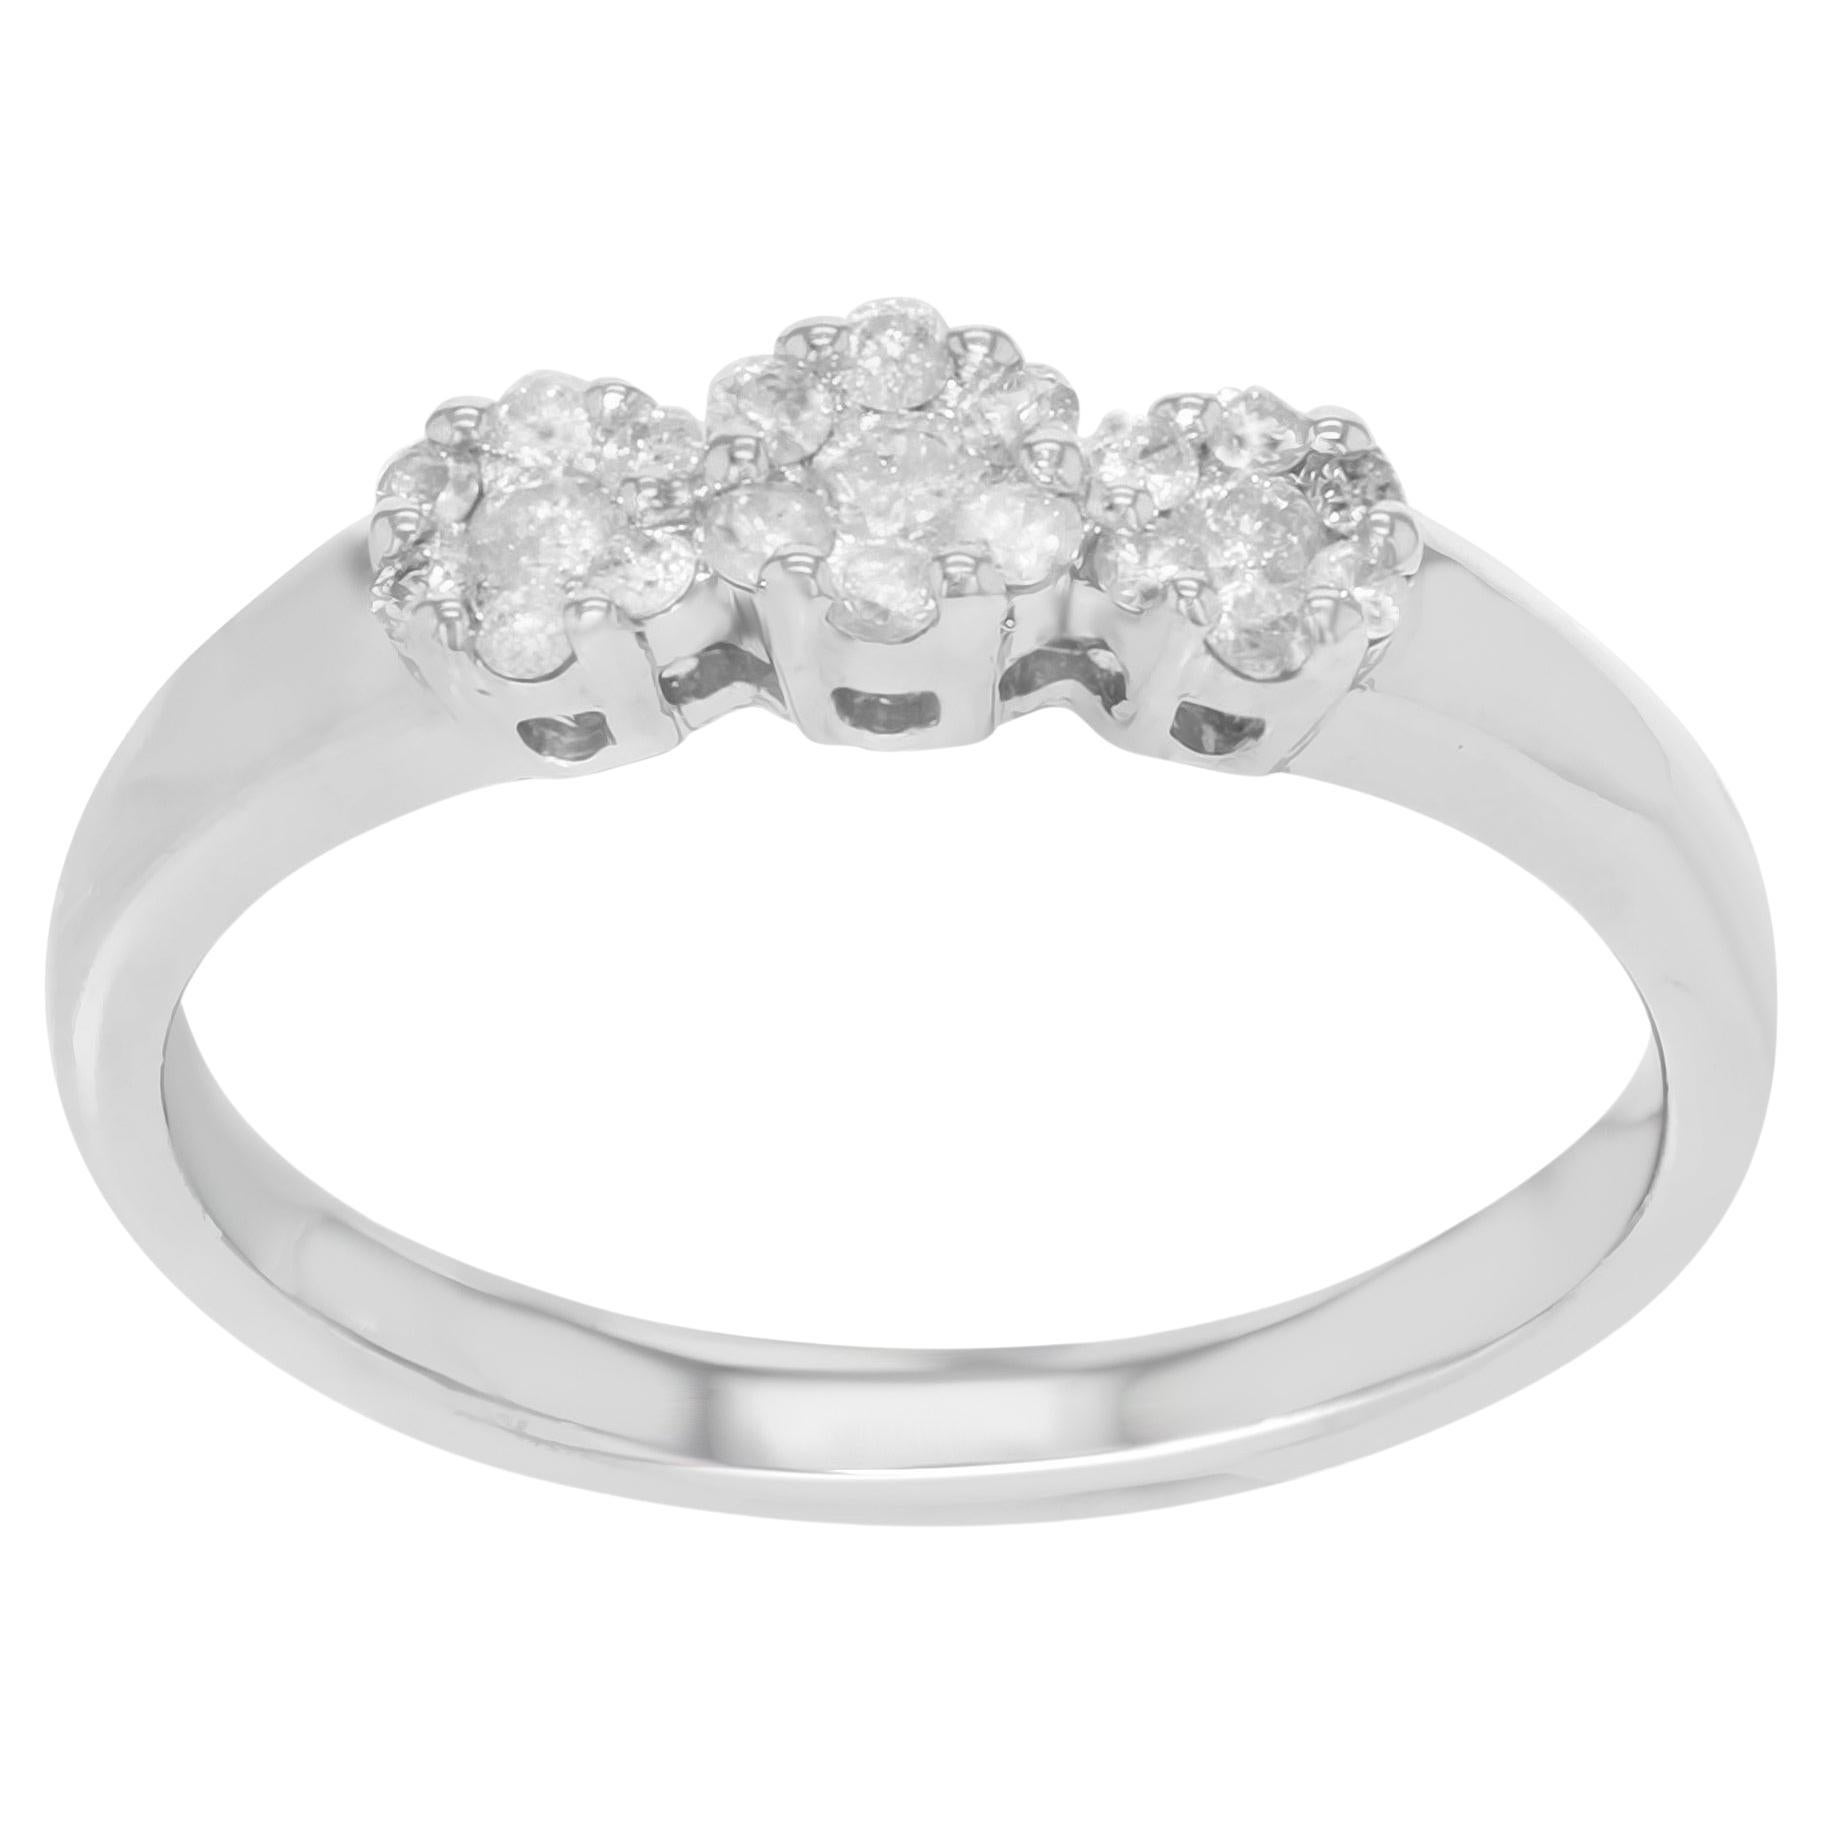 Rachel Koen Diamond Wedding Band 14k White Gold 0.29 Cttw For Sale